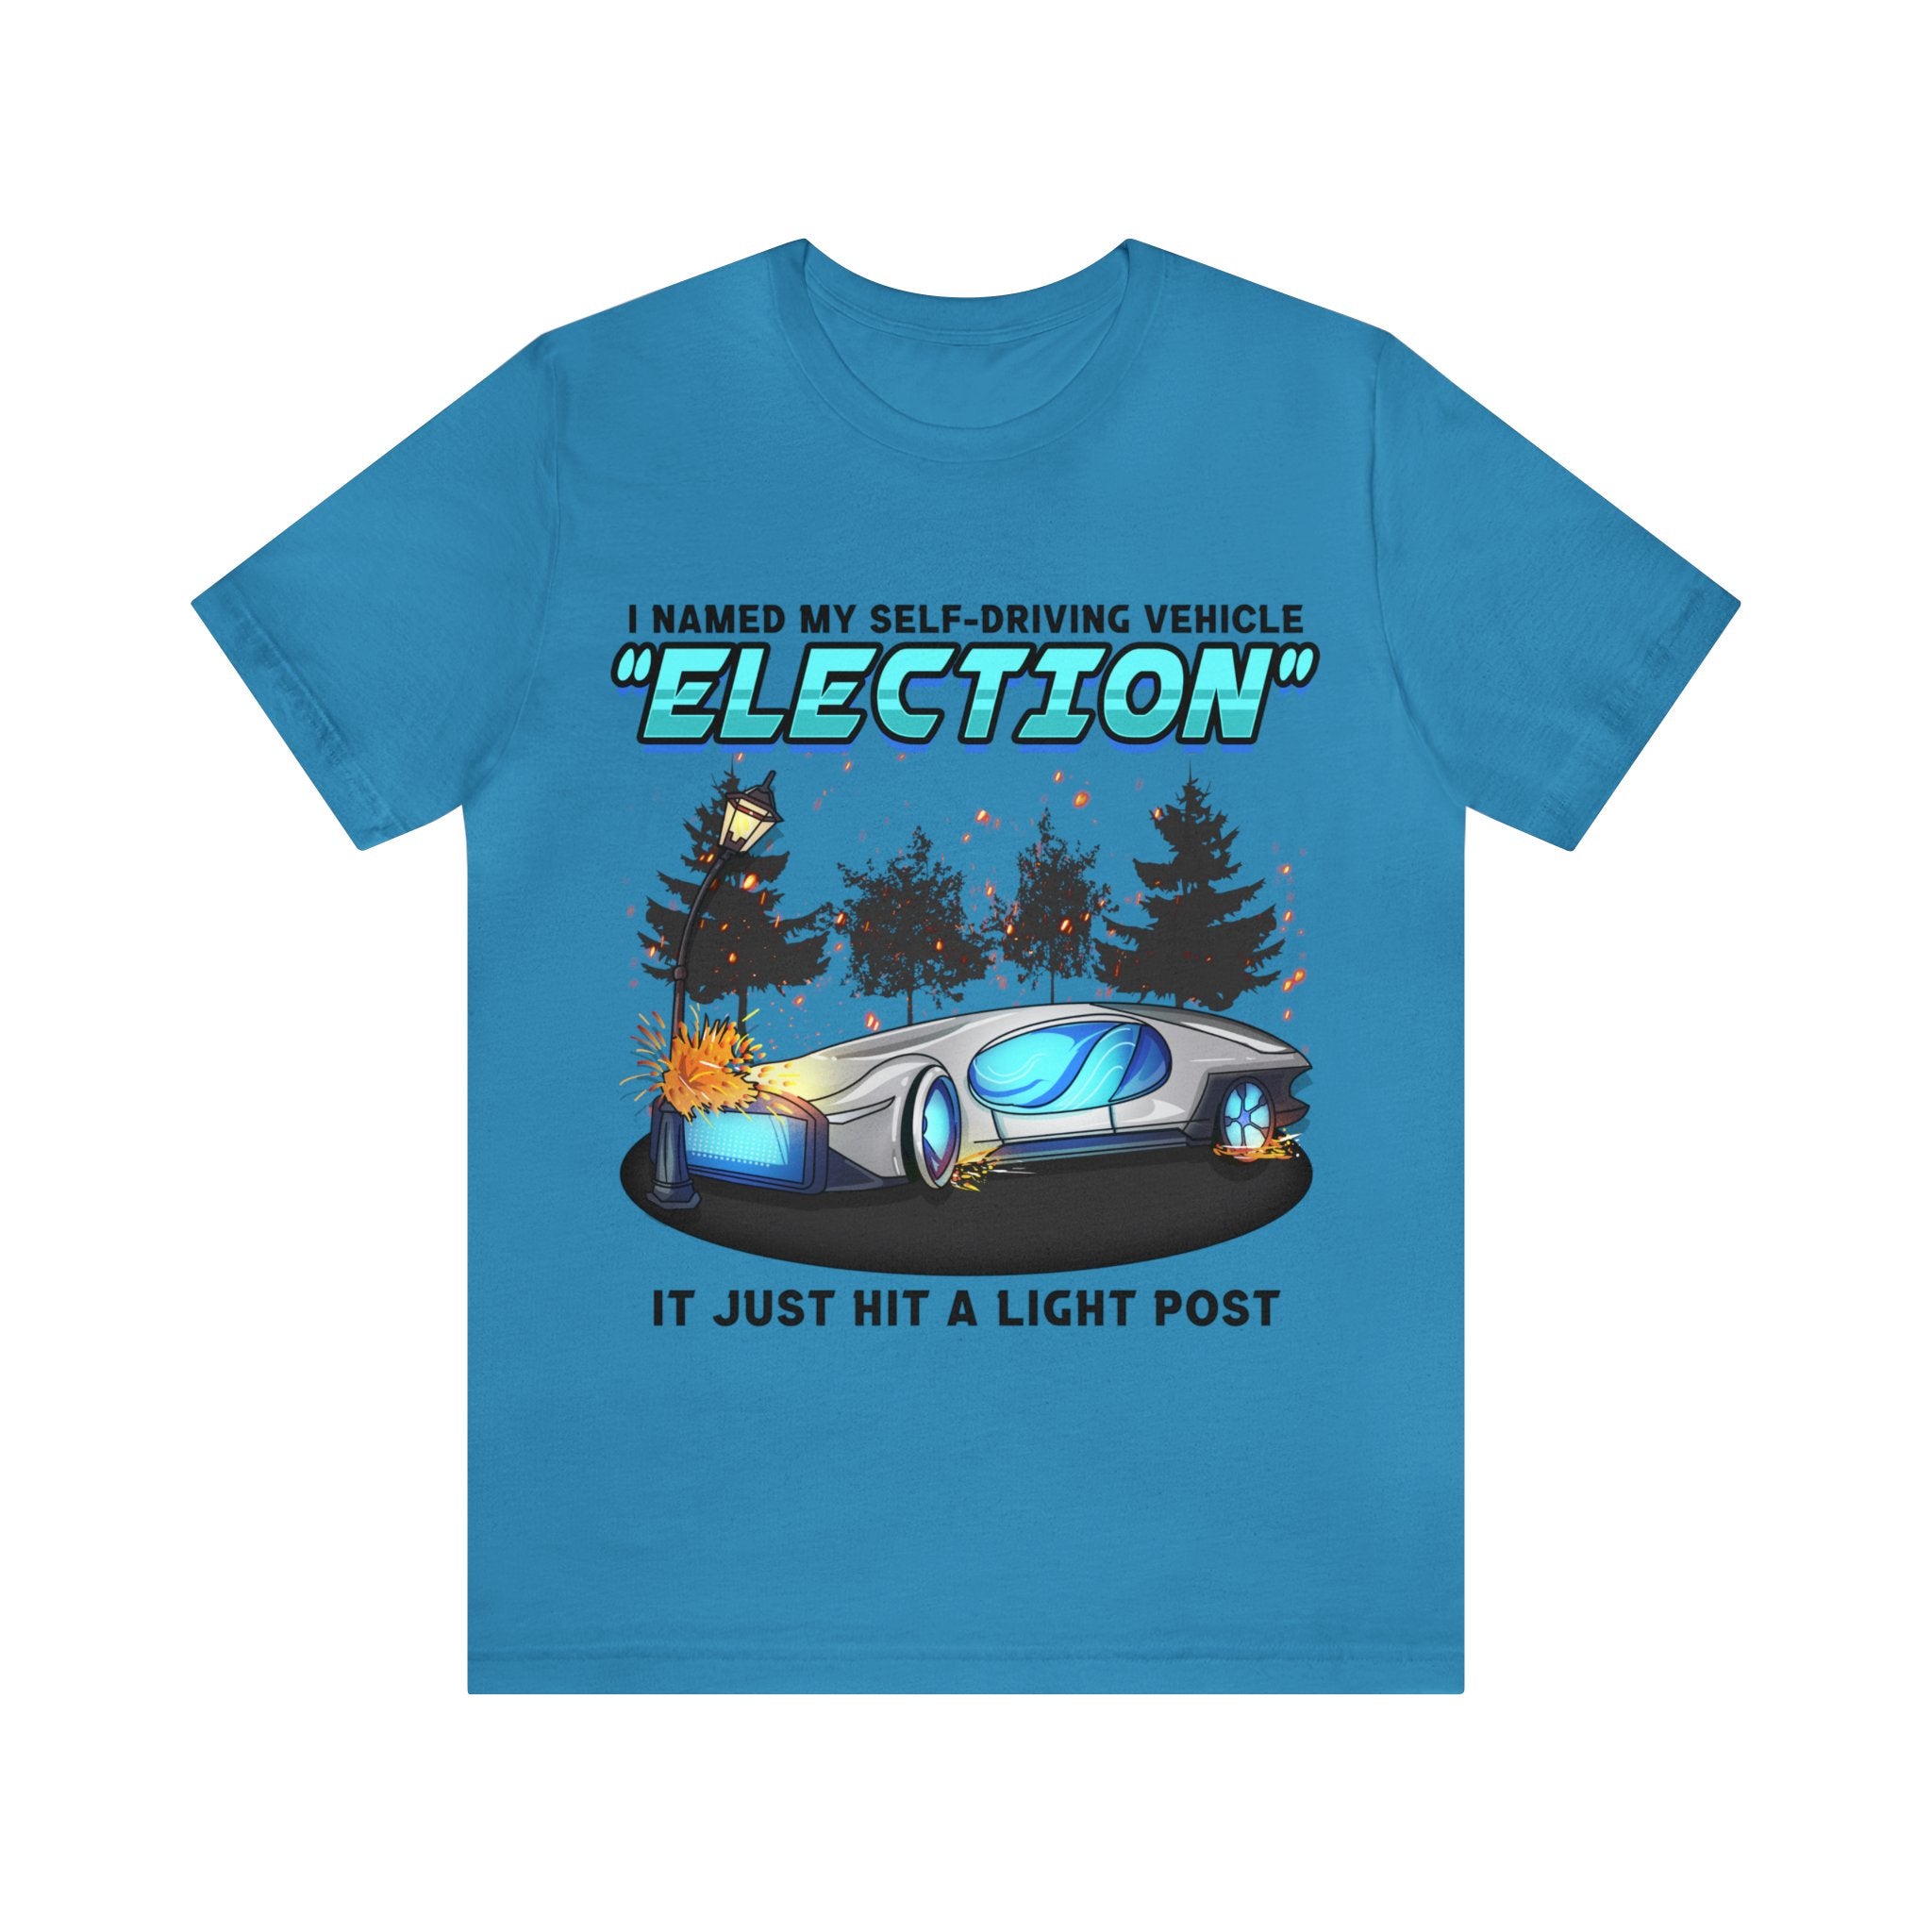 Bad Vehicle - Election Tee